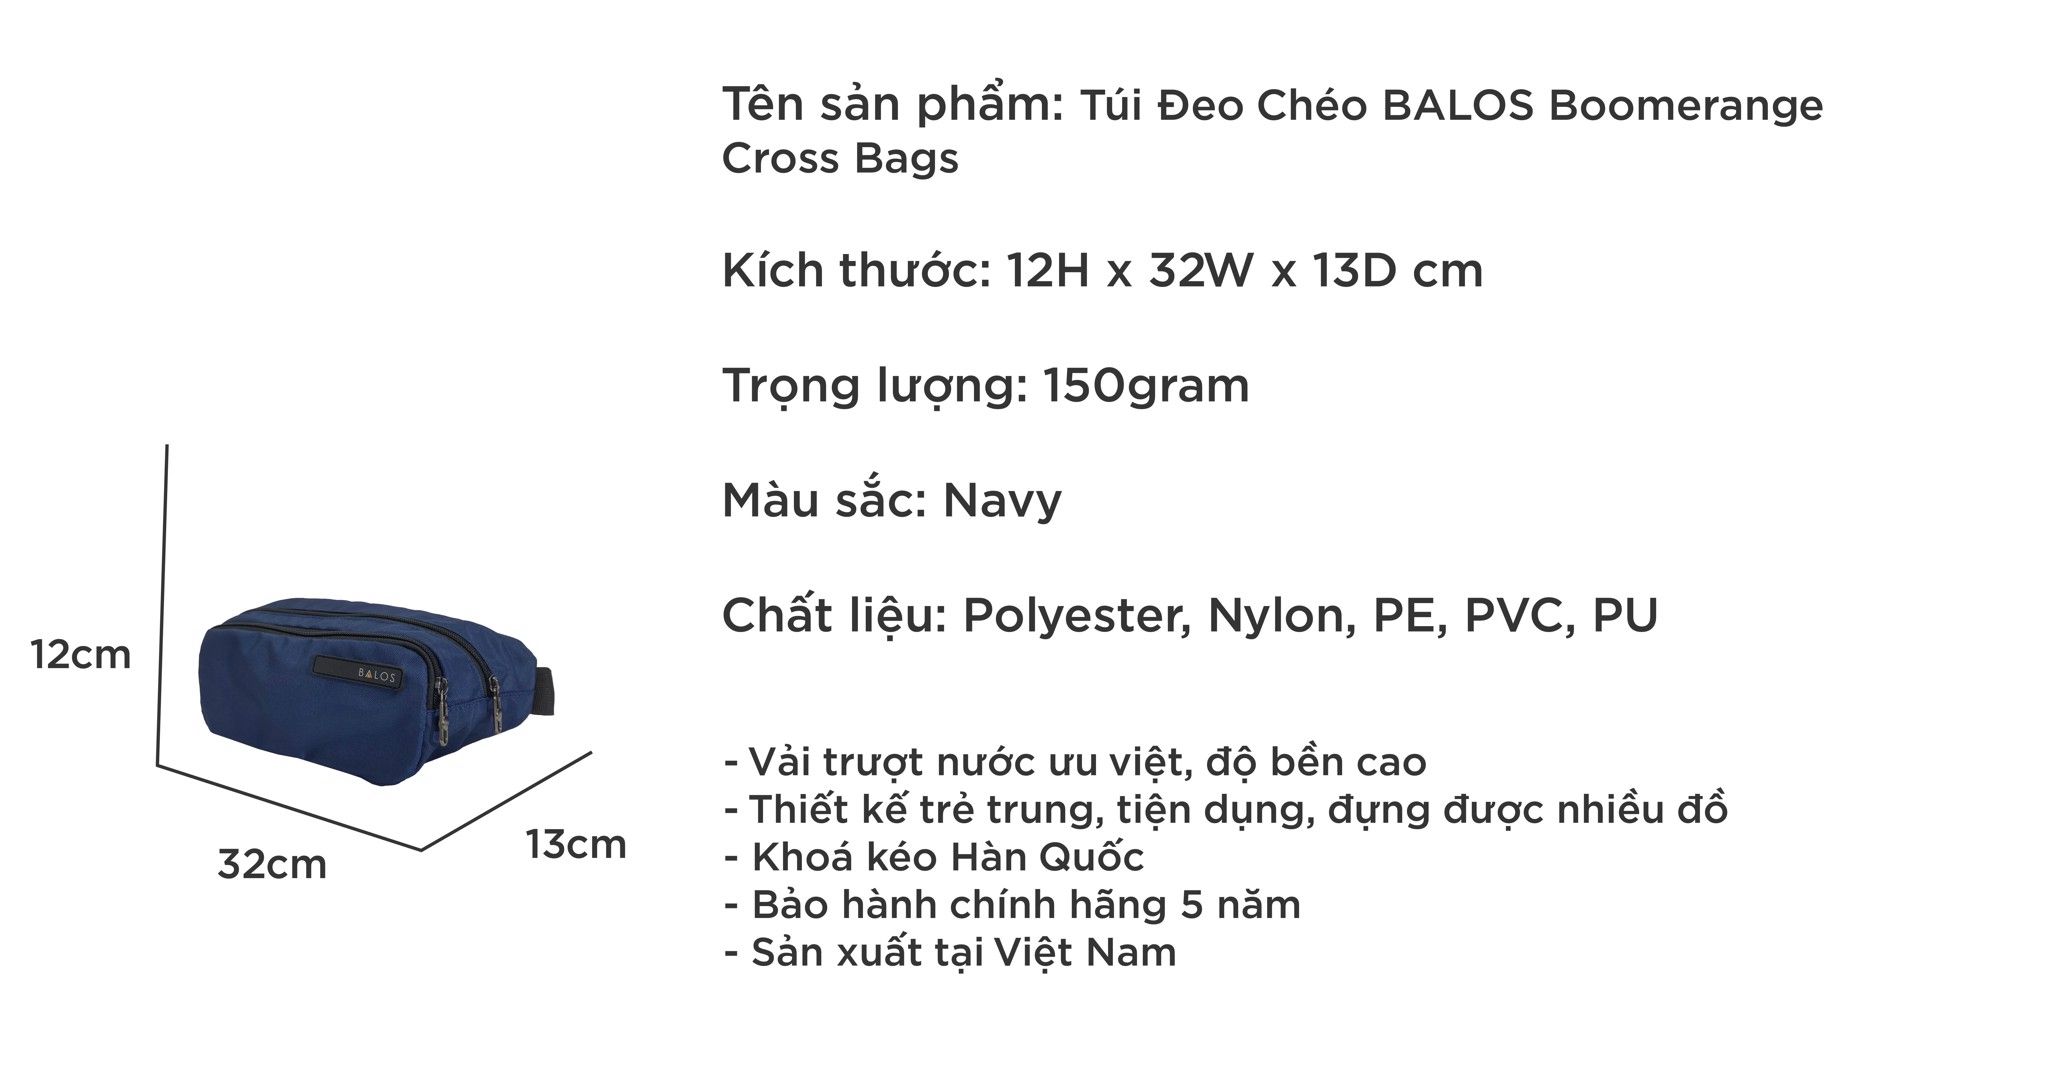  Balos BOOMERANGE Cross Bags Navy - Túi đeo chéo thời trang 